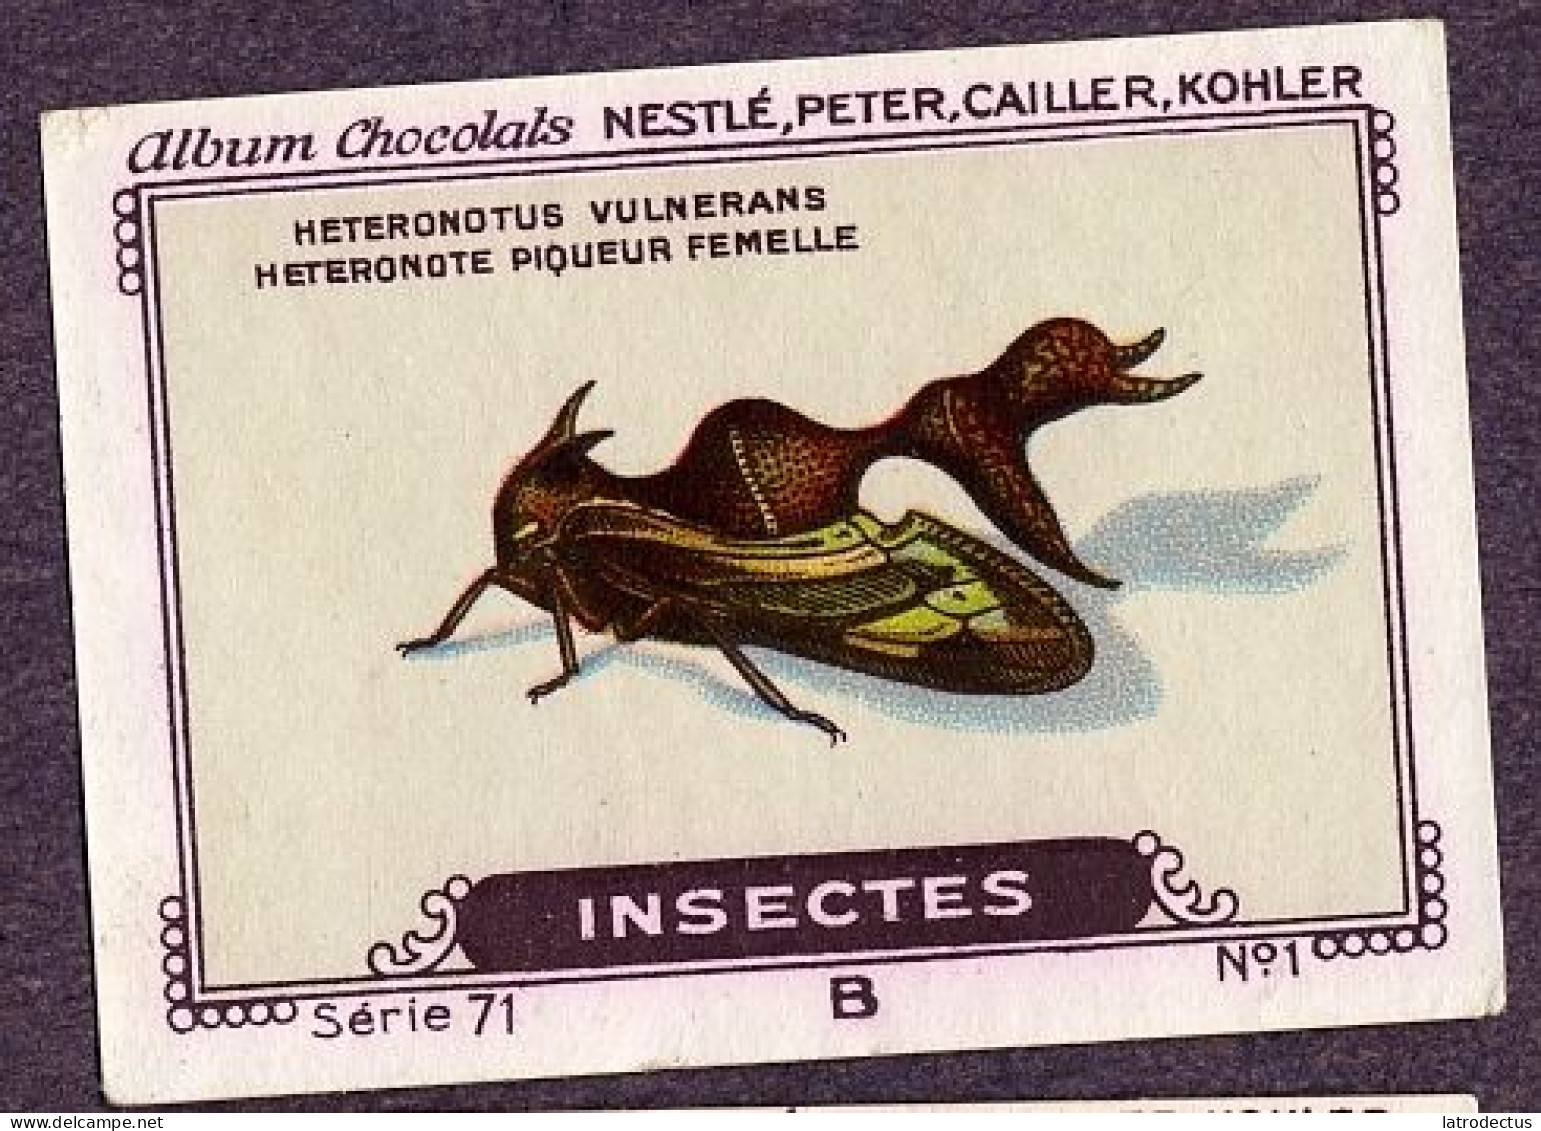 Nestlé - 71B - Insectes, Insects - 3 - Diactor Bilineatus - Nestlé